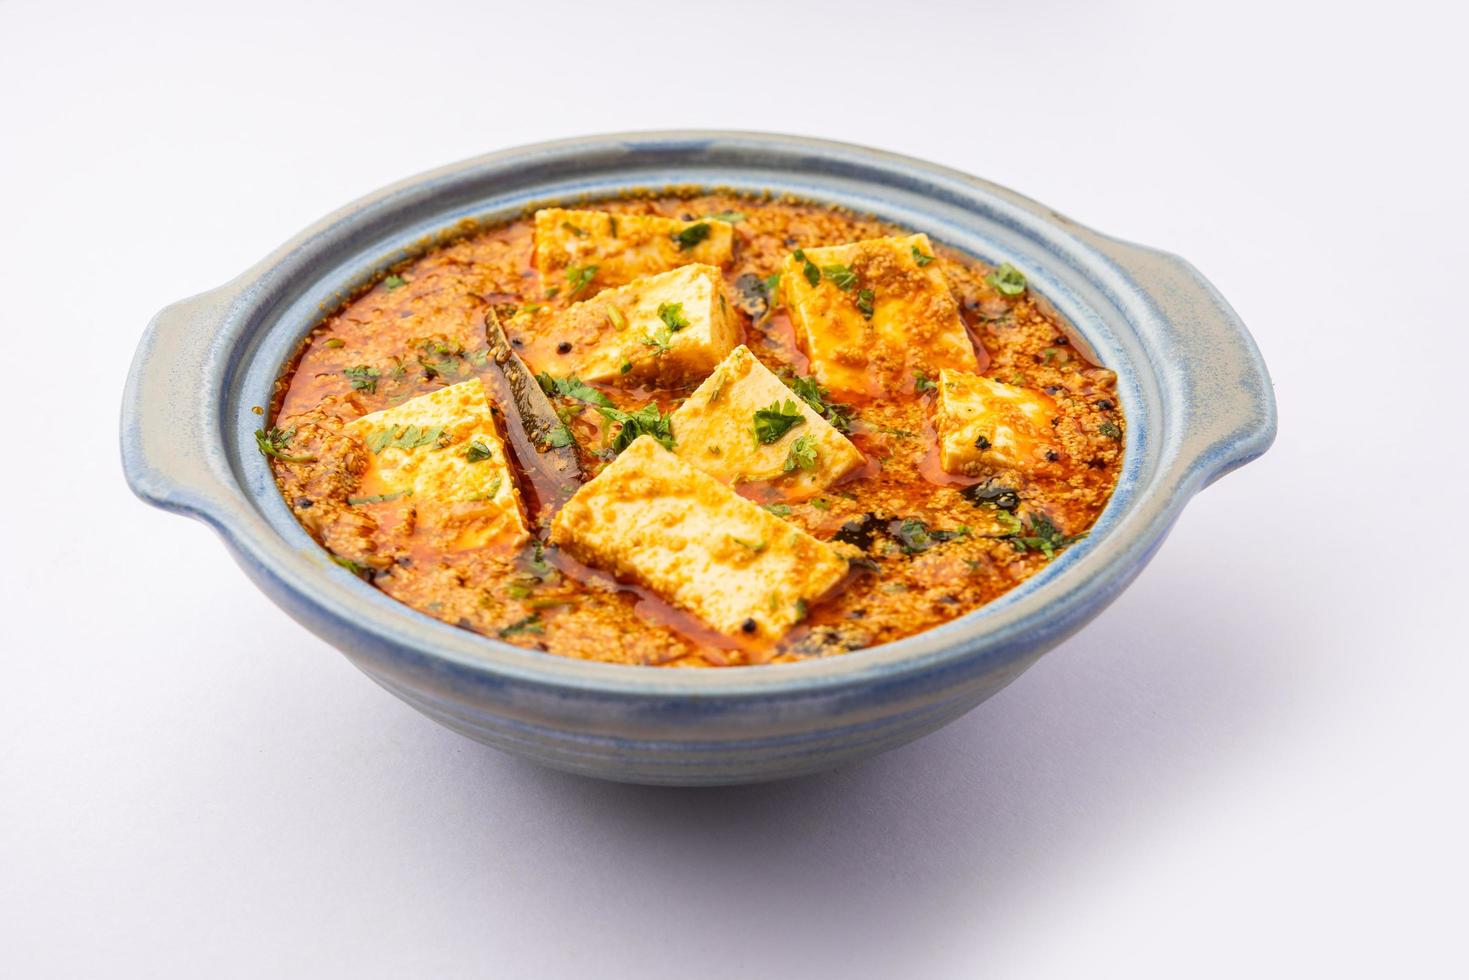 paneer khus khus curry eller stuga ost posto masala tillverkad använder sig av vallmo frön, indisk recept foto